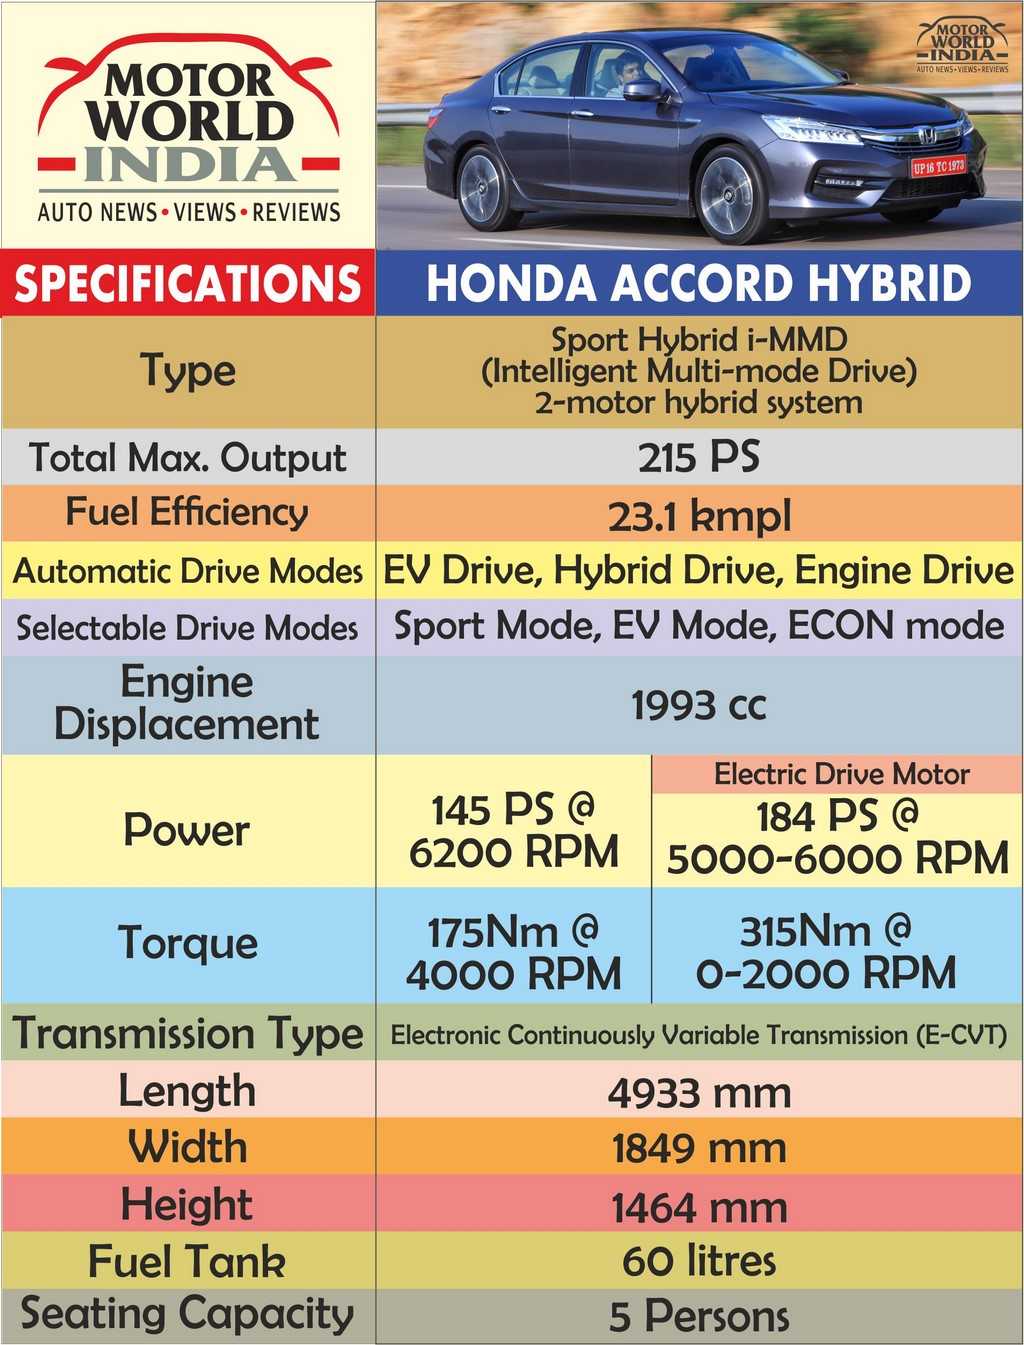 Хонда аккорд 2000, 2 литра, доброго времени суток дамы и господа, мощность f20b, расход 8, 5-13, красноярск, комплектация vts, мкпп, бензин